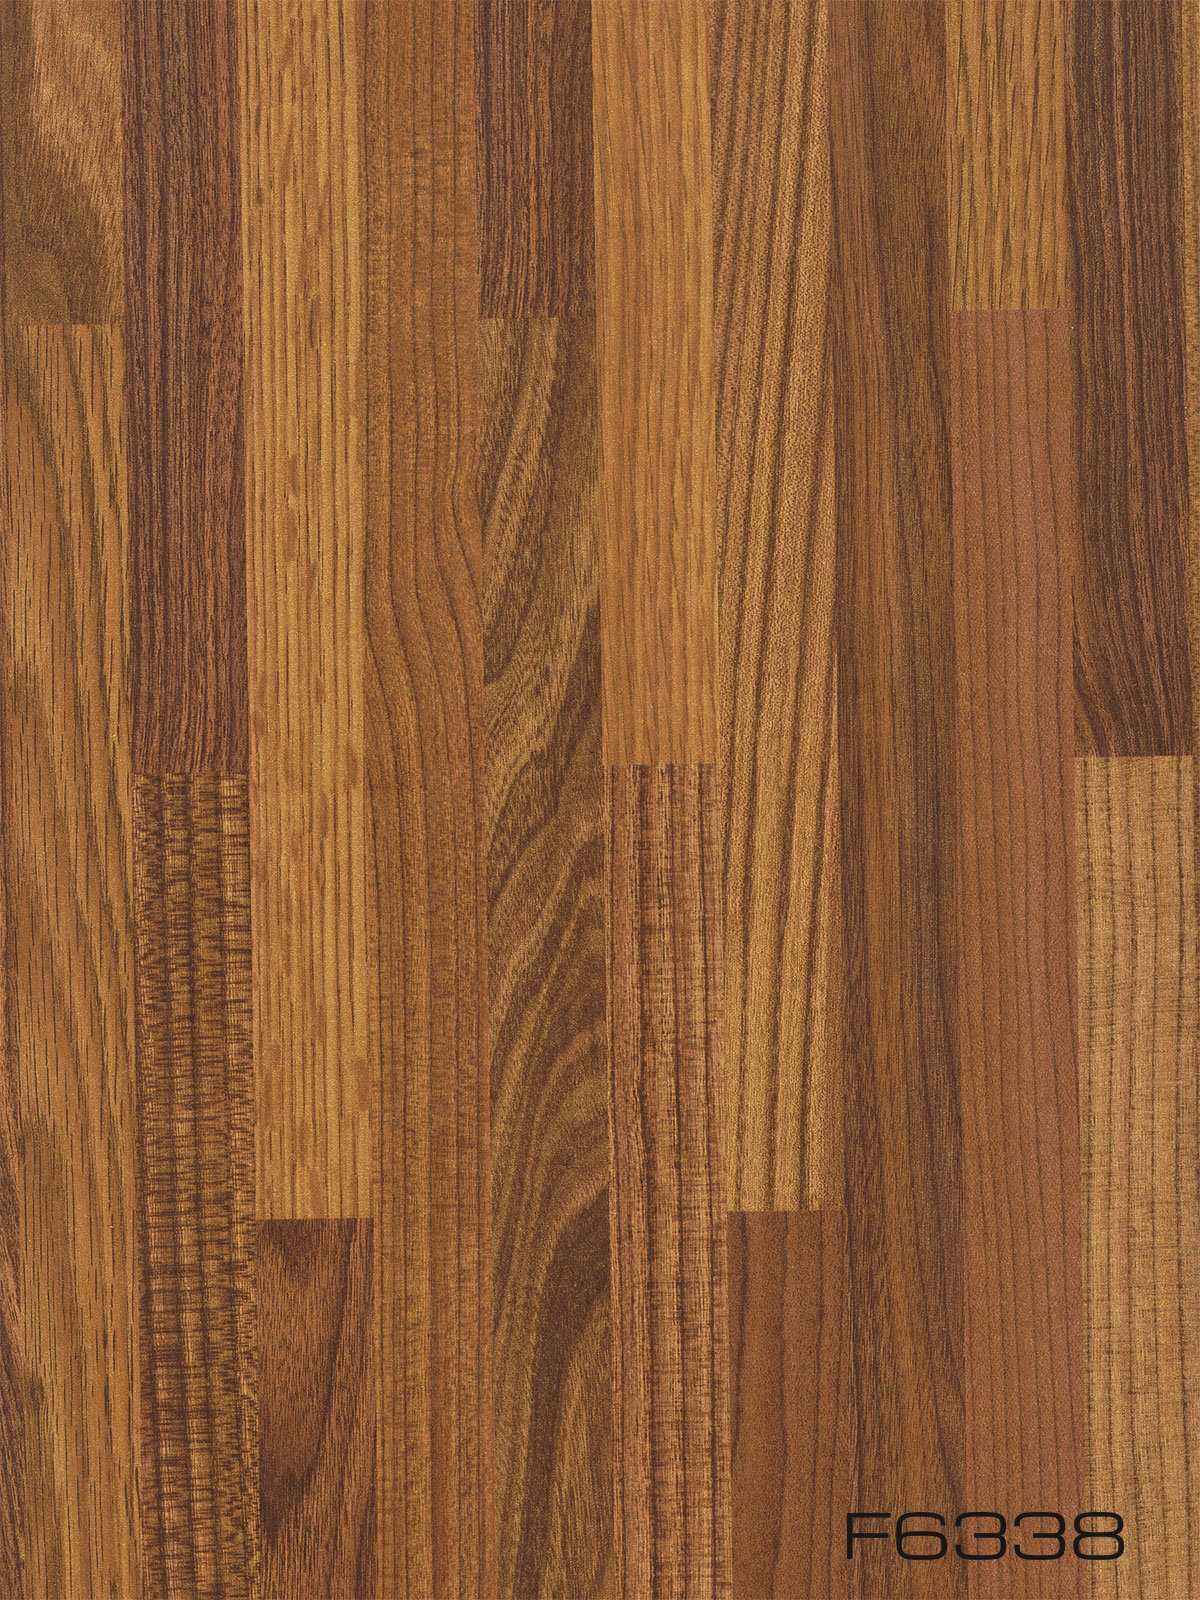 Sàn gỗ công nghiệp F6338